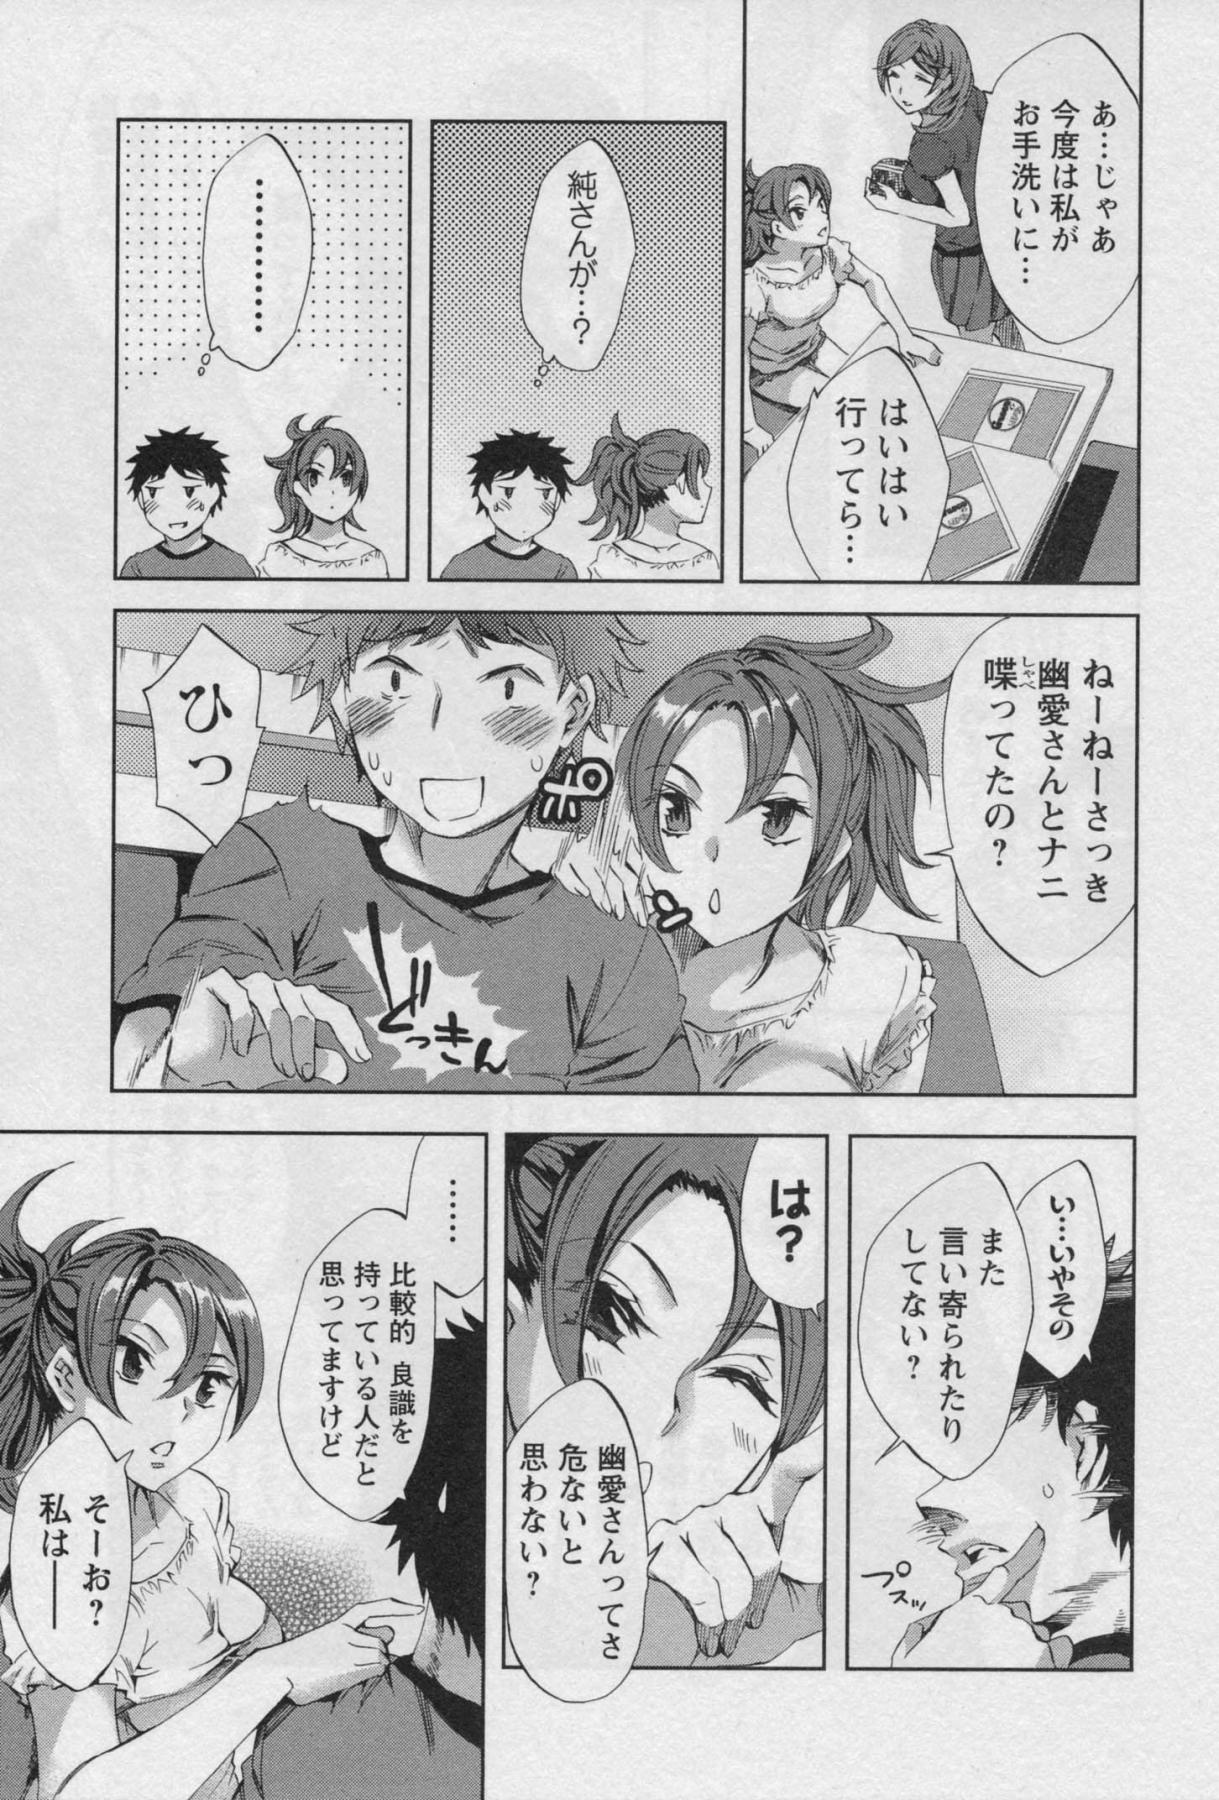 [Emua] Offline Game Vol.3 [えむあ] おふらいんげーむ 第03巻 (2010.03.27)